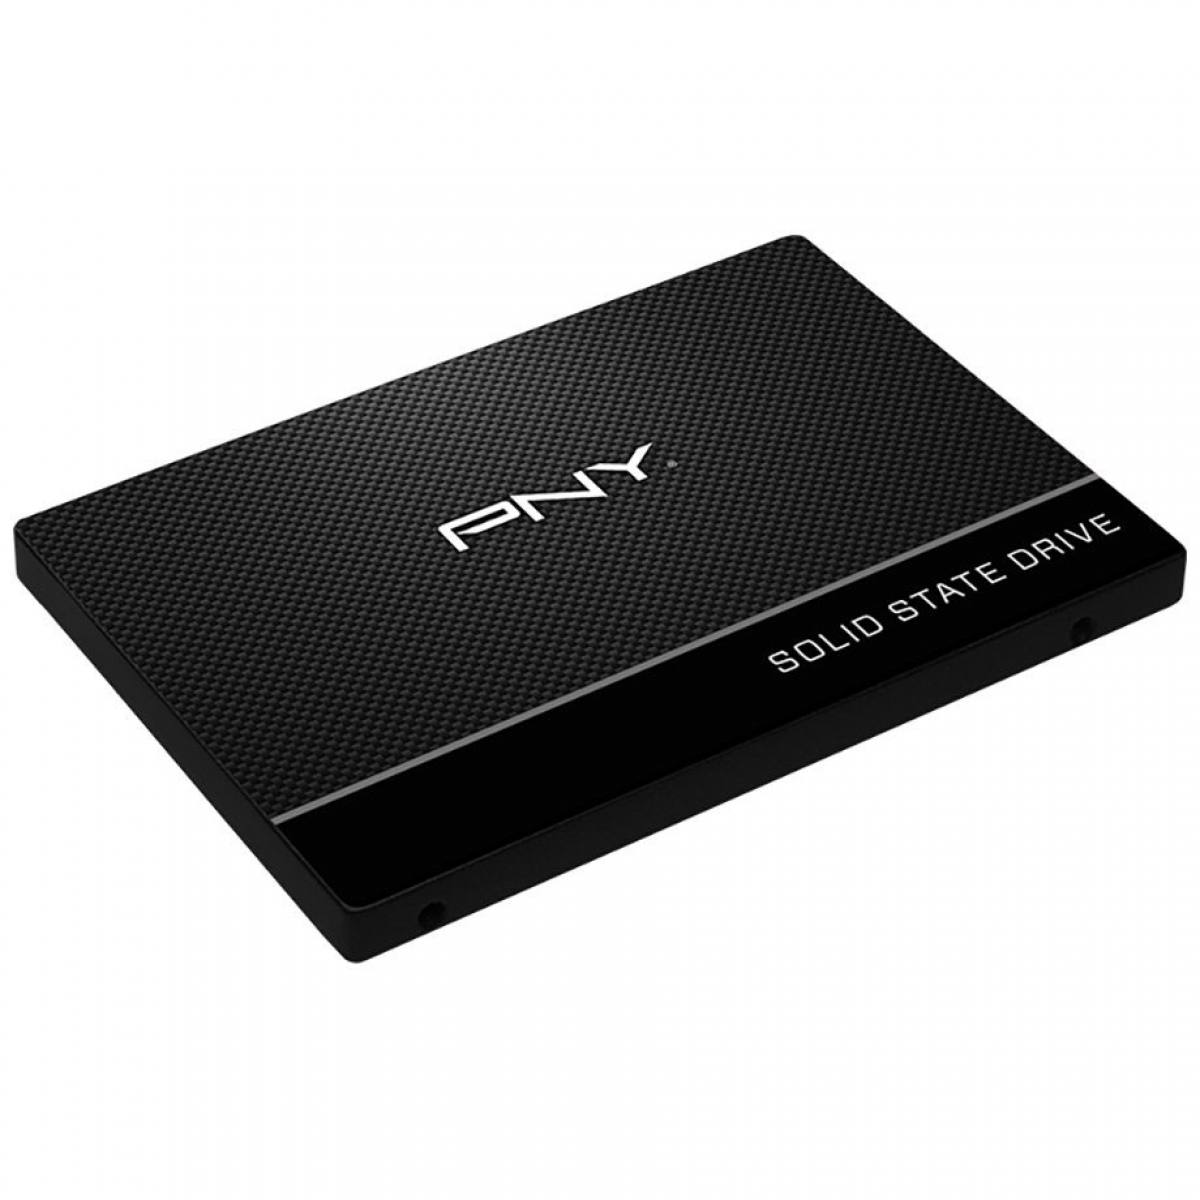 SSD PNY CS900 2.5inch 480GB TLC 